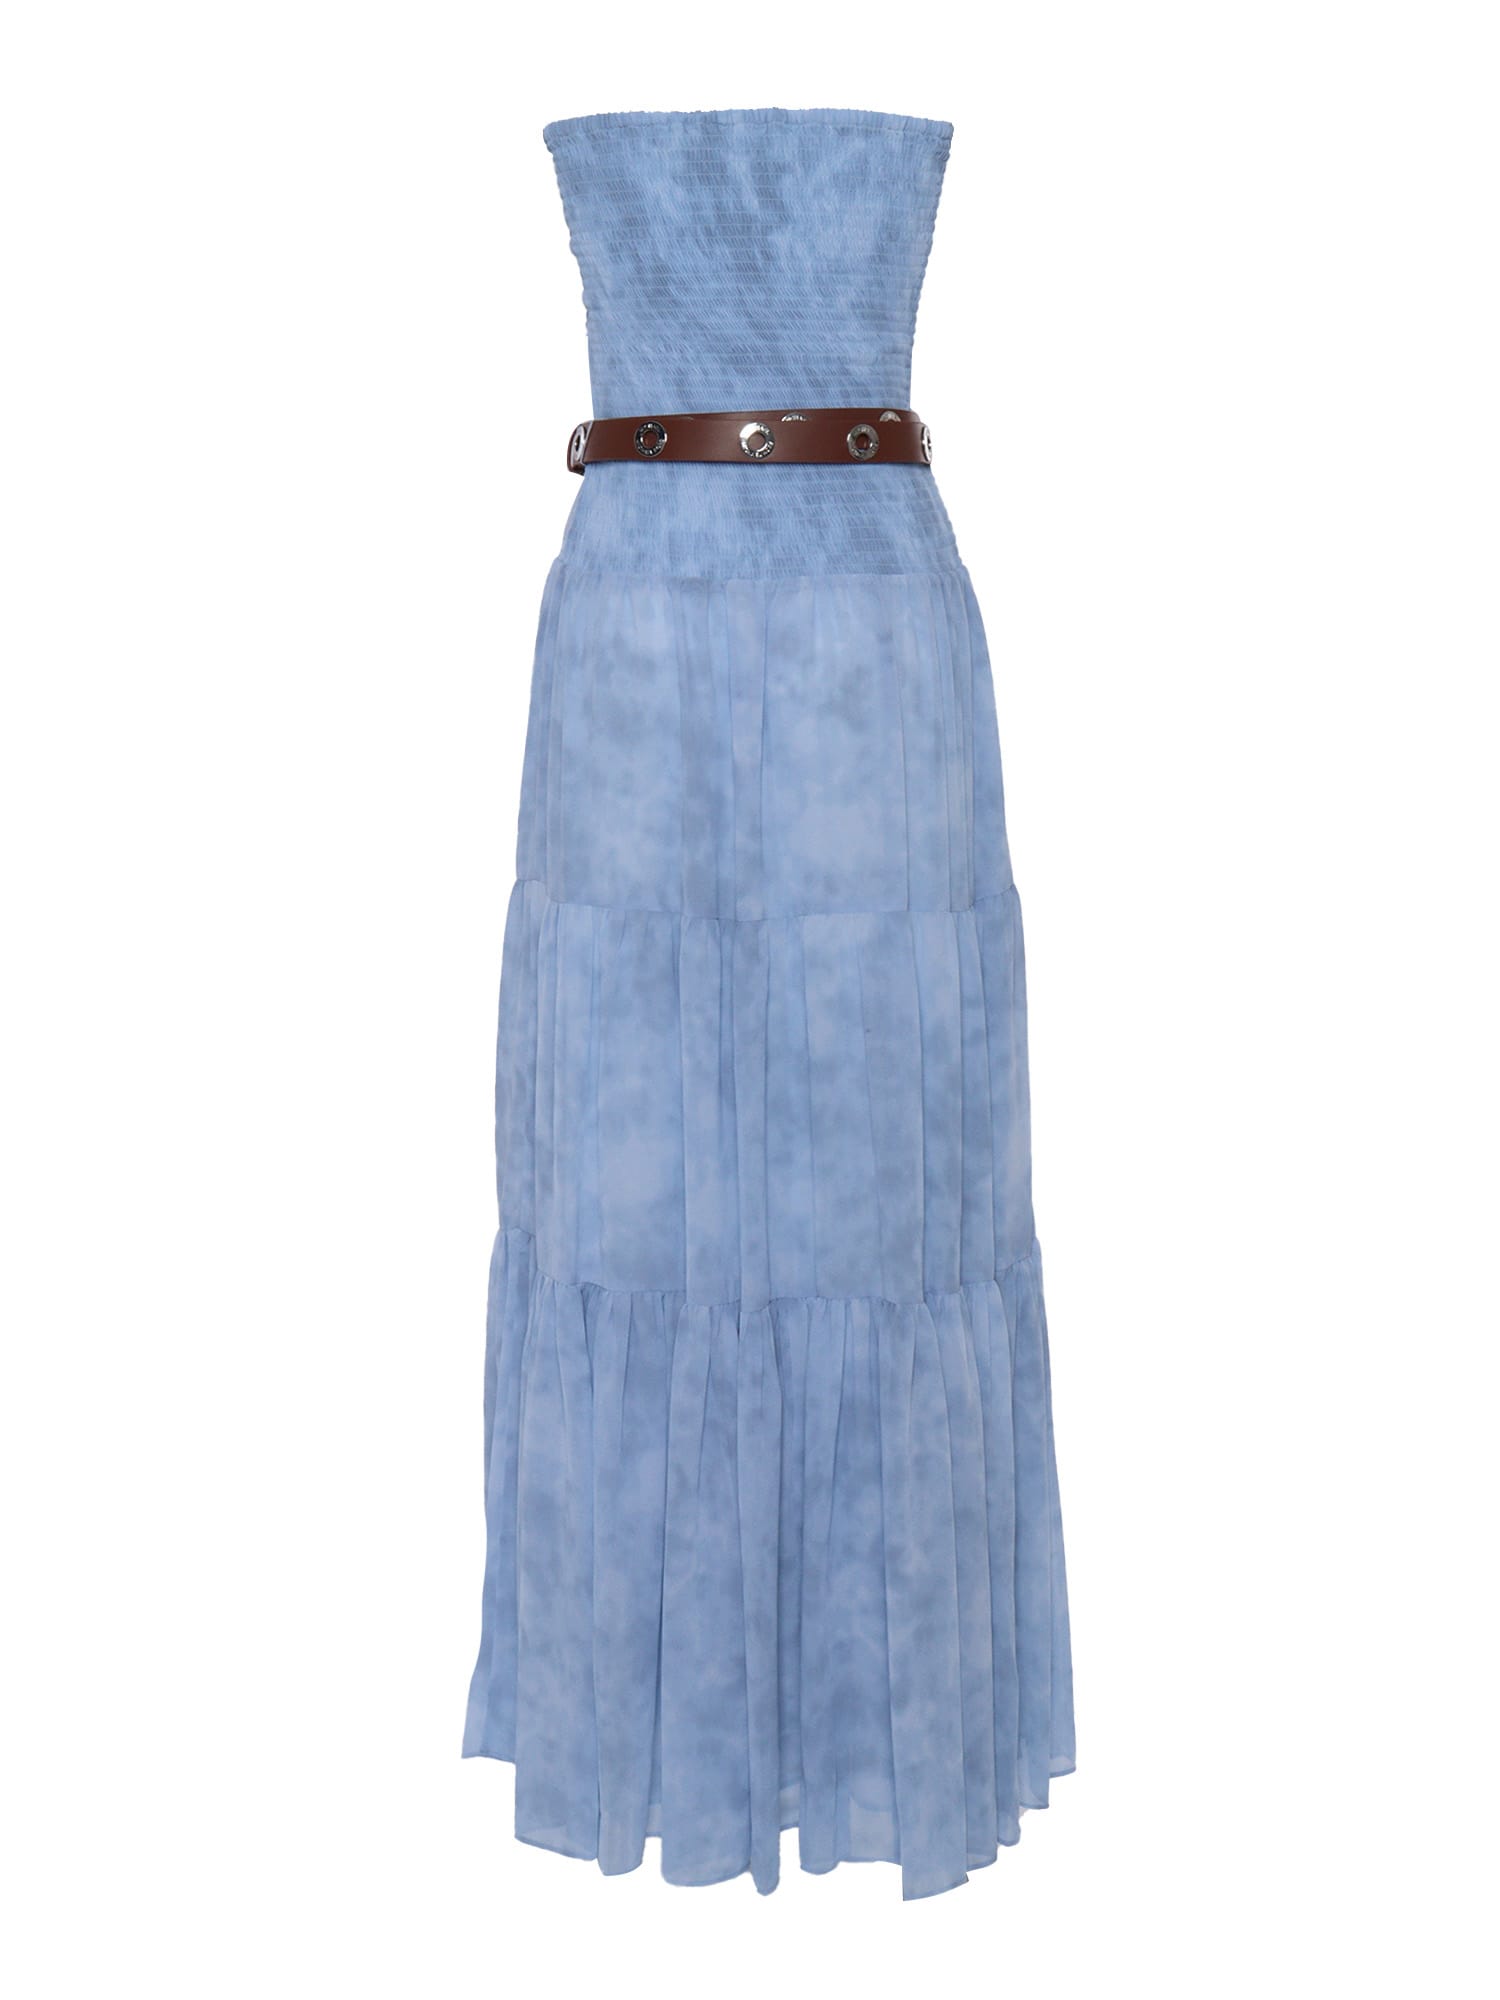 Shop Michael Kors Sunbleach Light Blue Dress